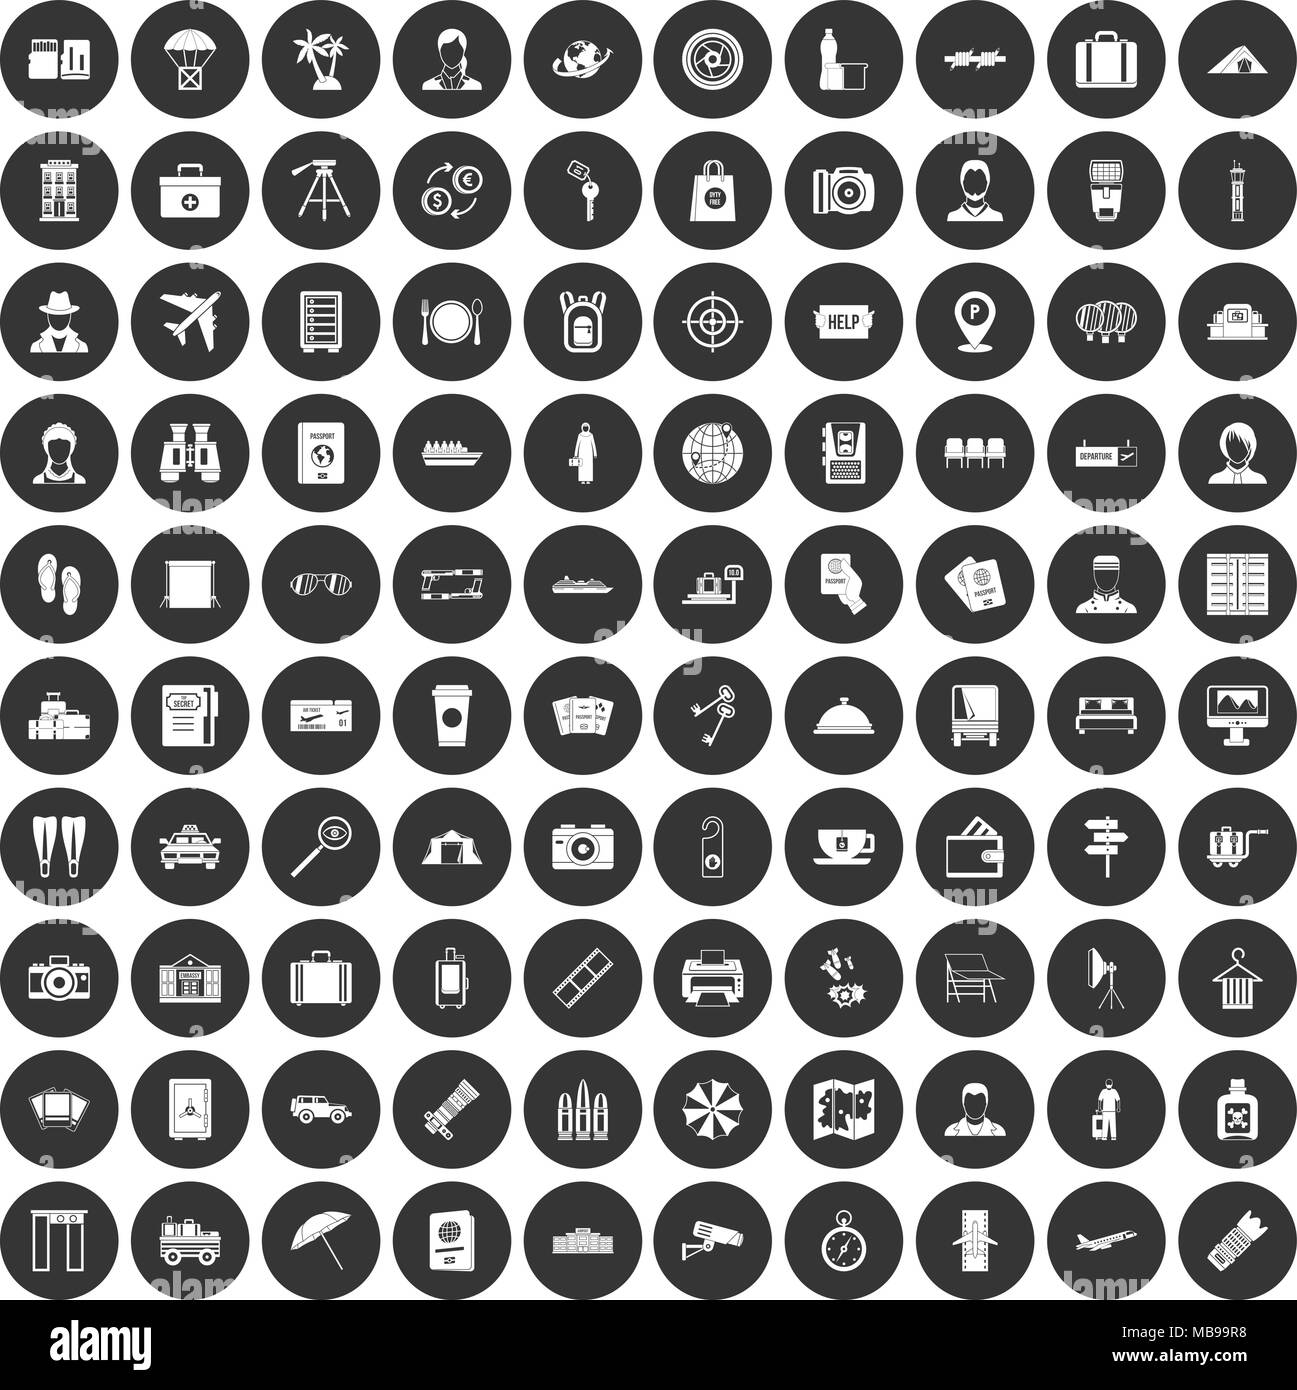 100 Pass Icons Set schwarz Kreis Stock Vektor